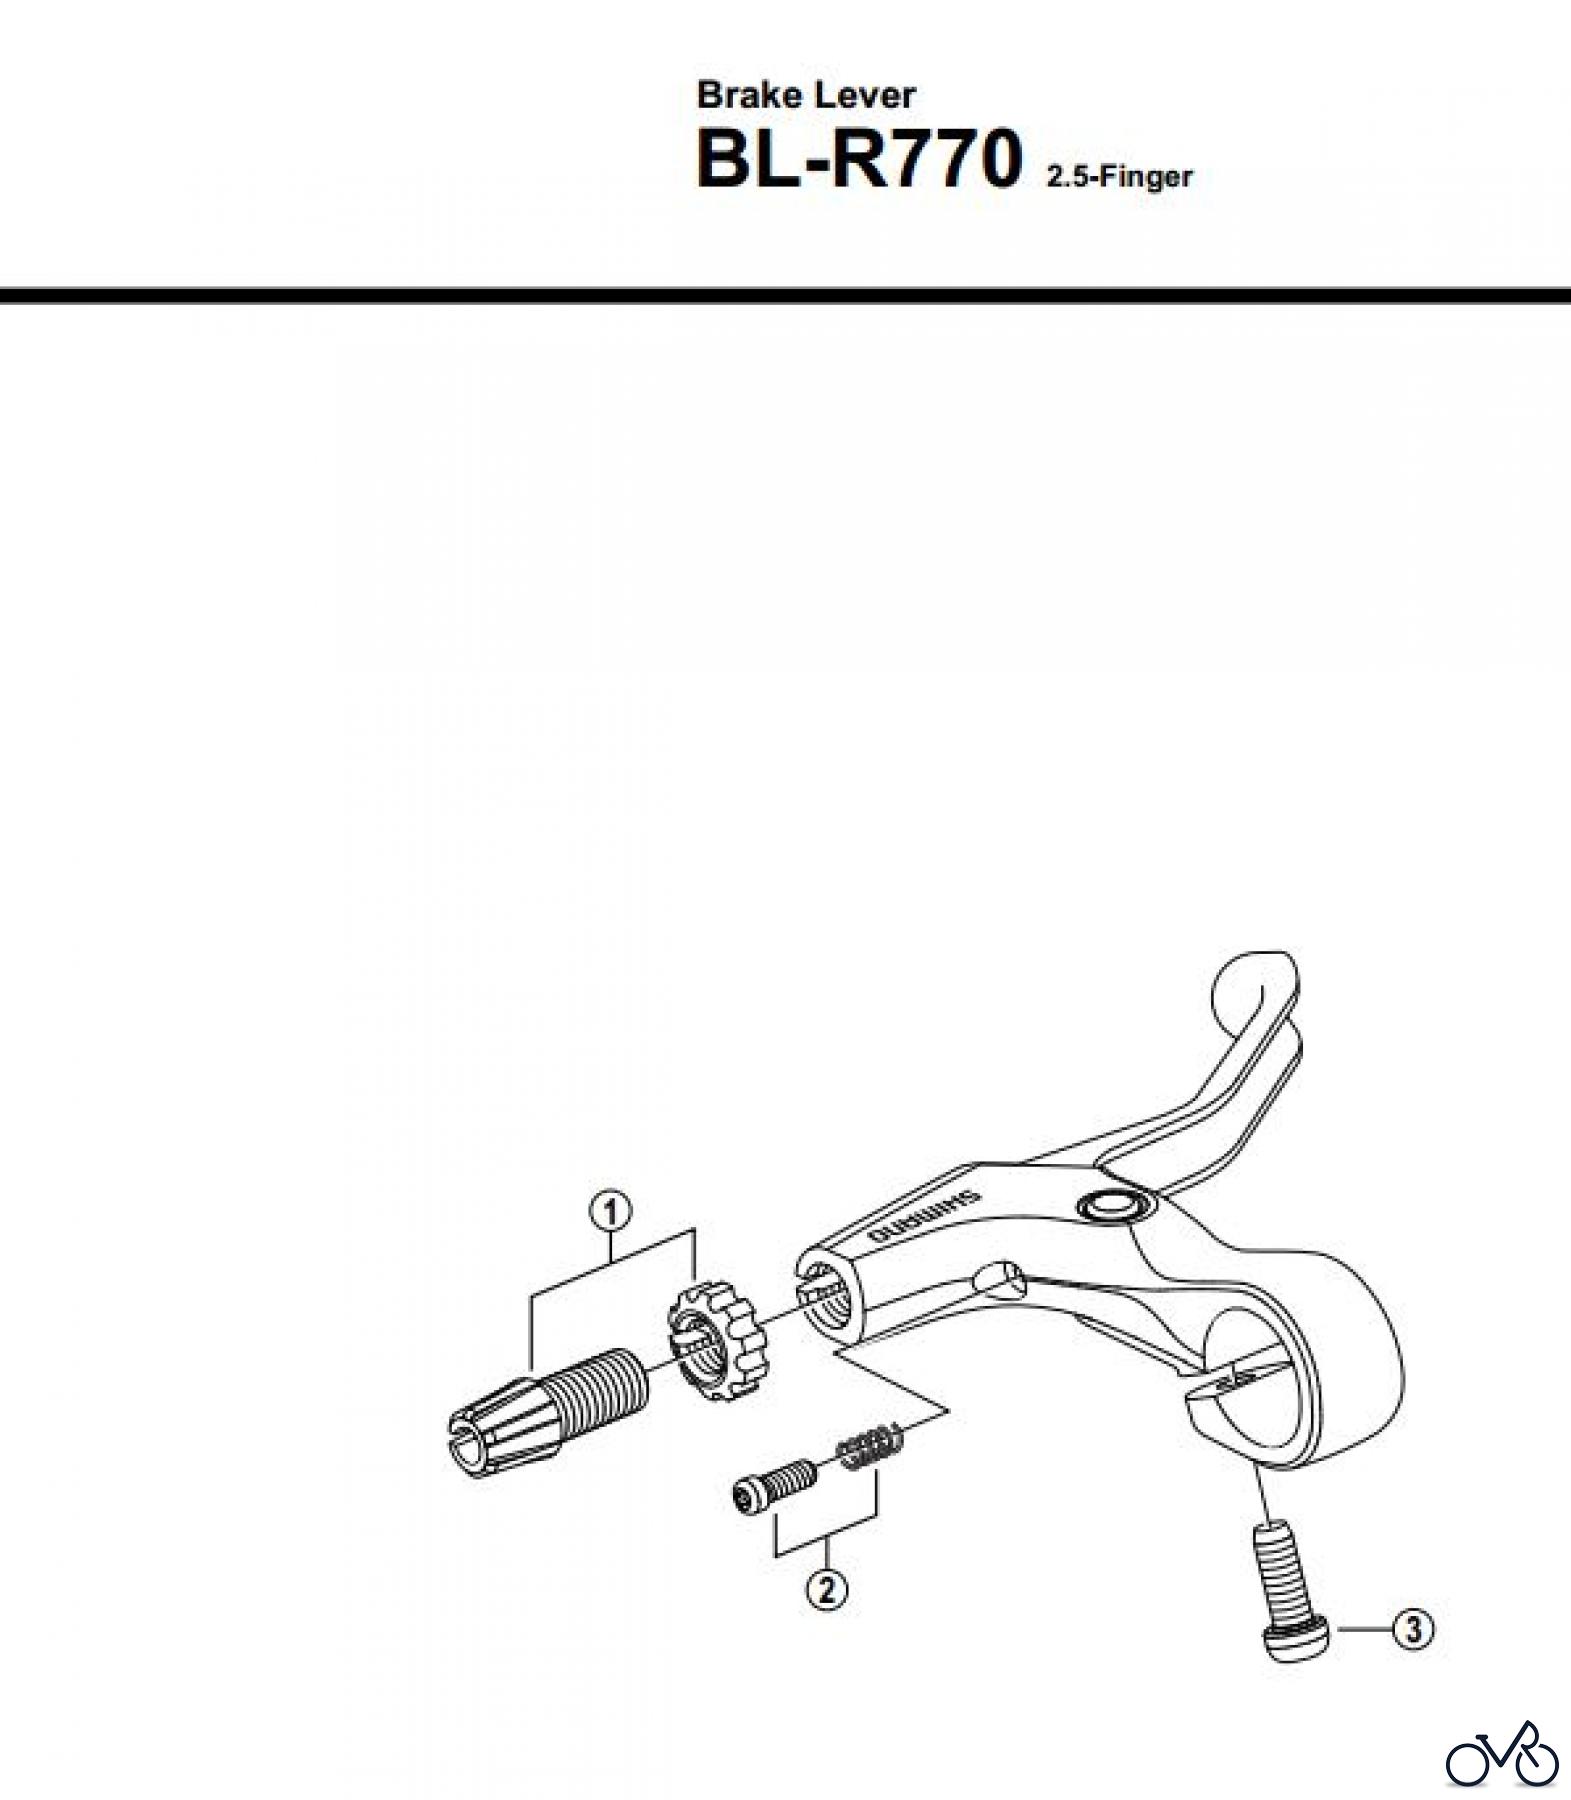  Shimano BL Brake Lever - Bremshebel BL-R770